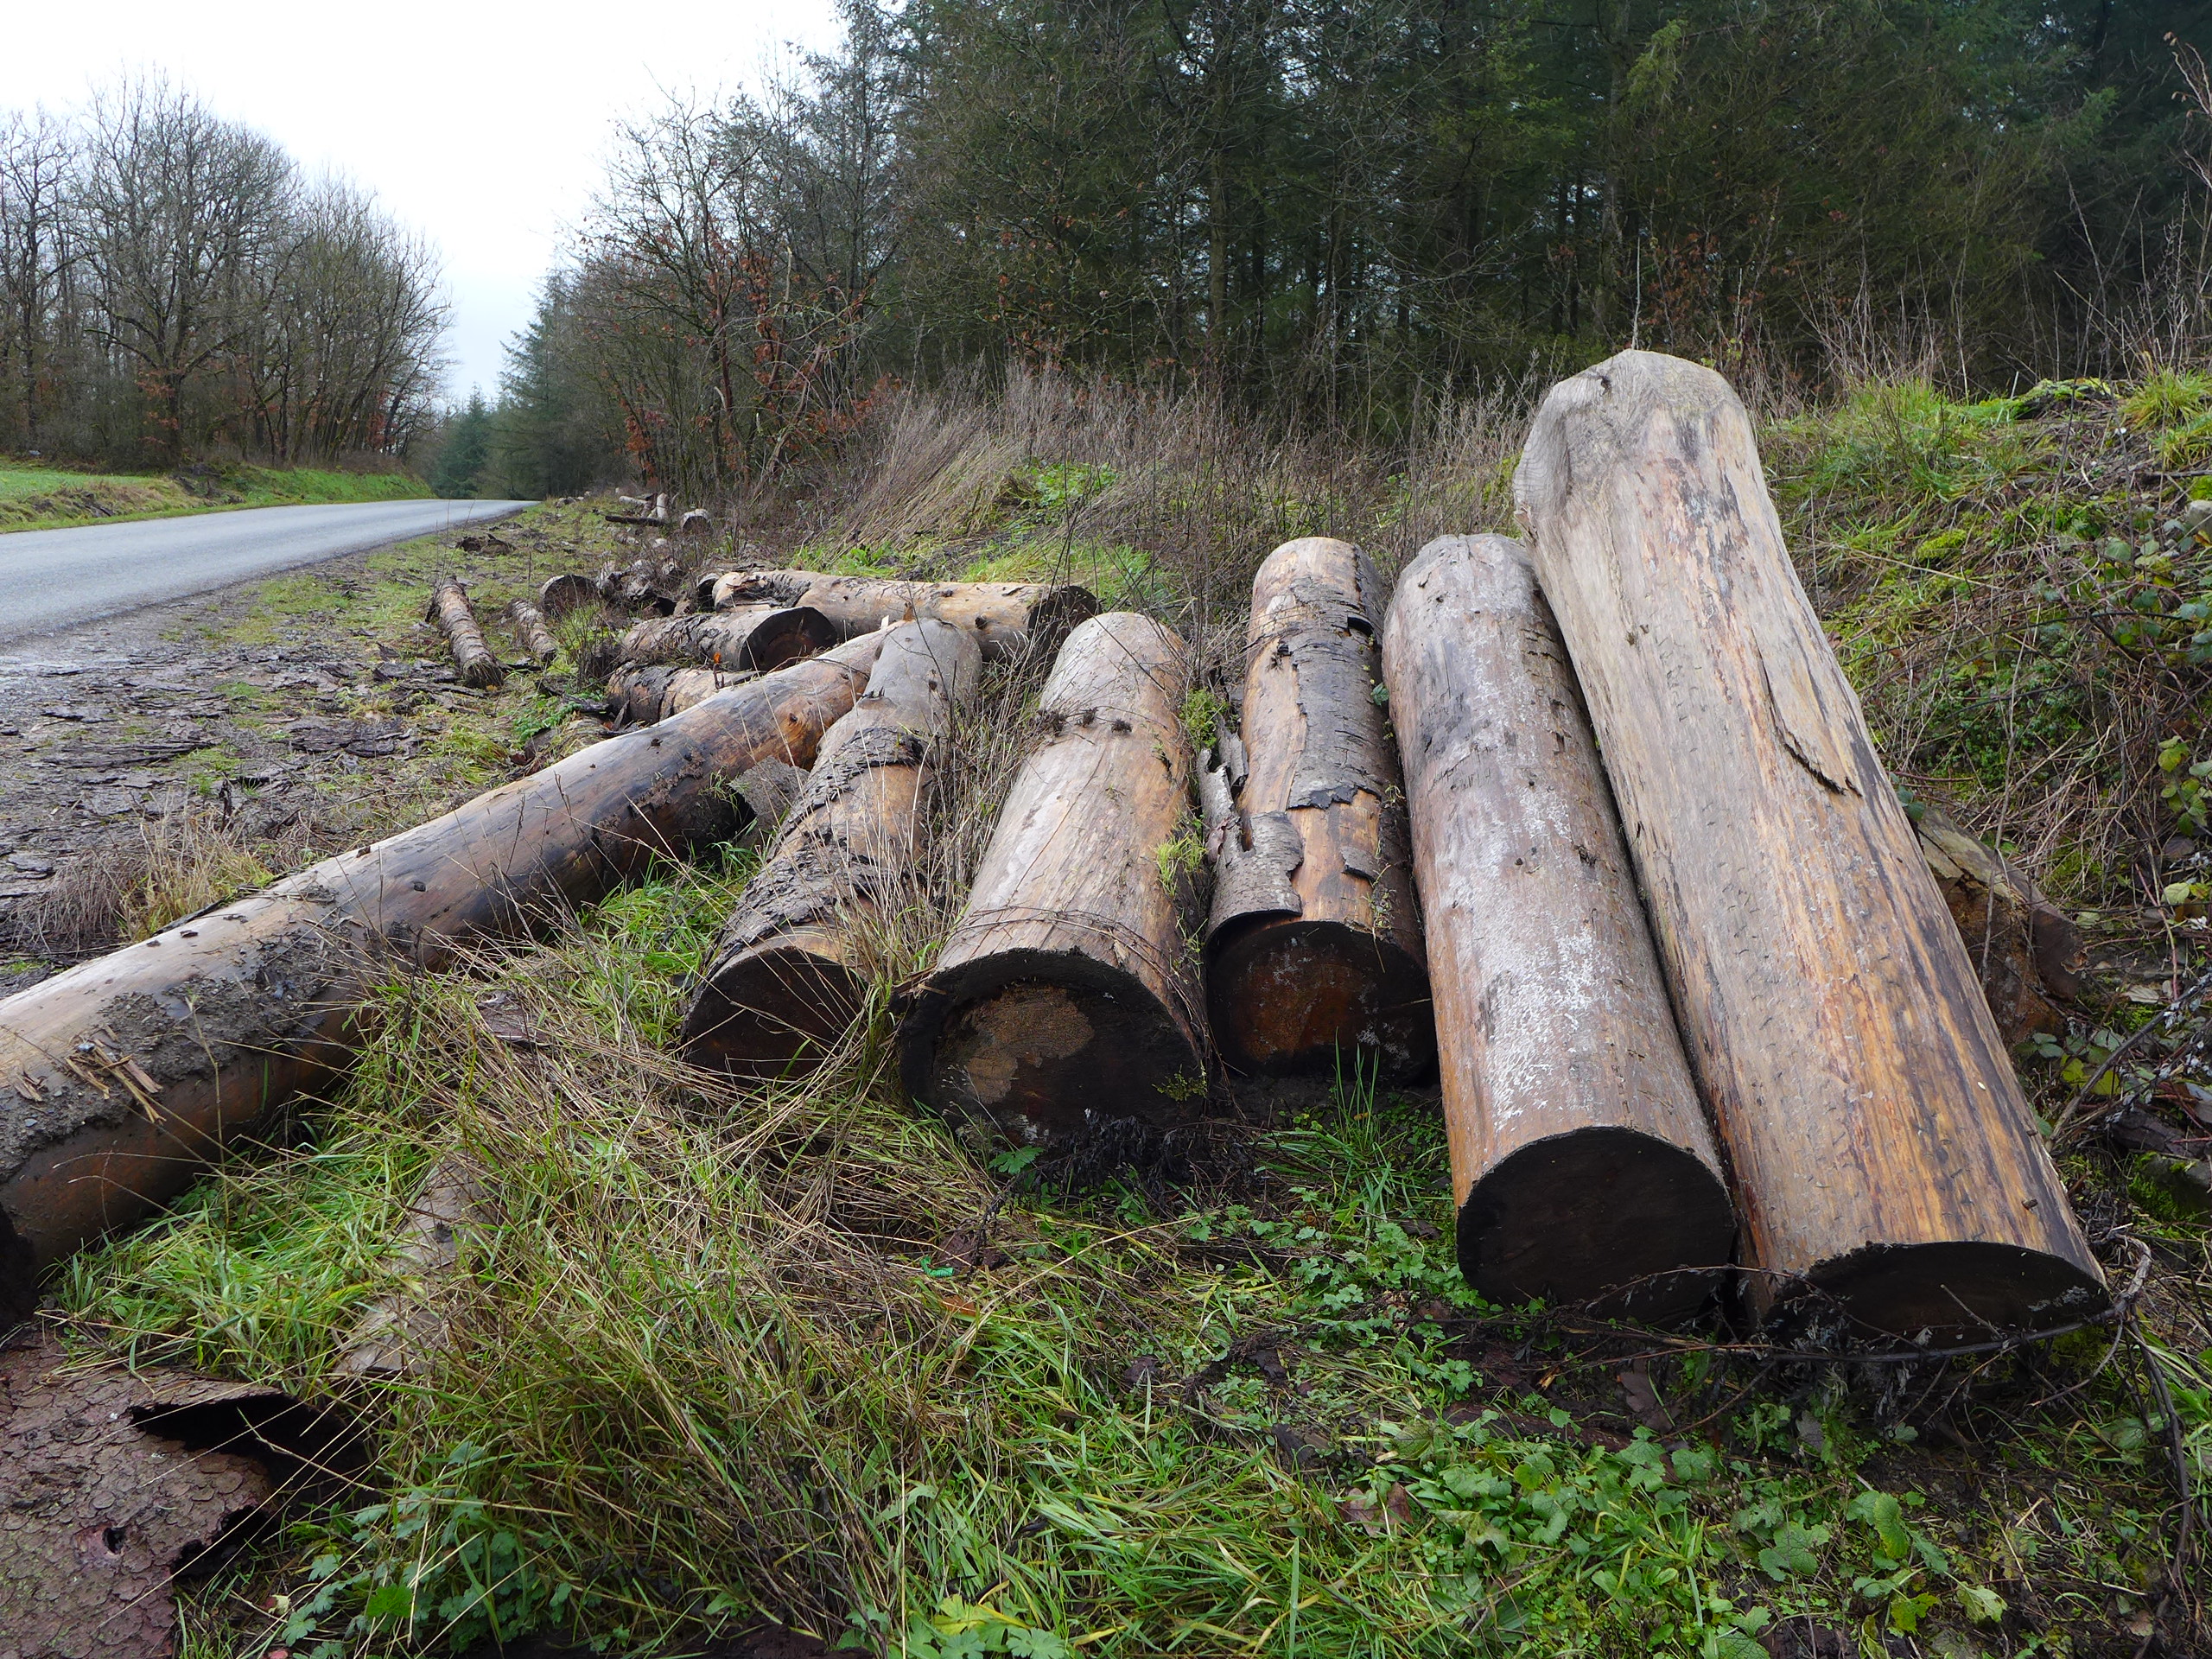 Le prix de ce bois ayant chuté ces derniers mois, on le retrouve en train de pourrir sur le bord de la route © Globe Reporters